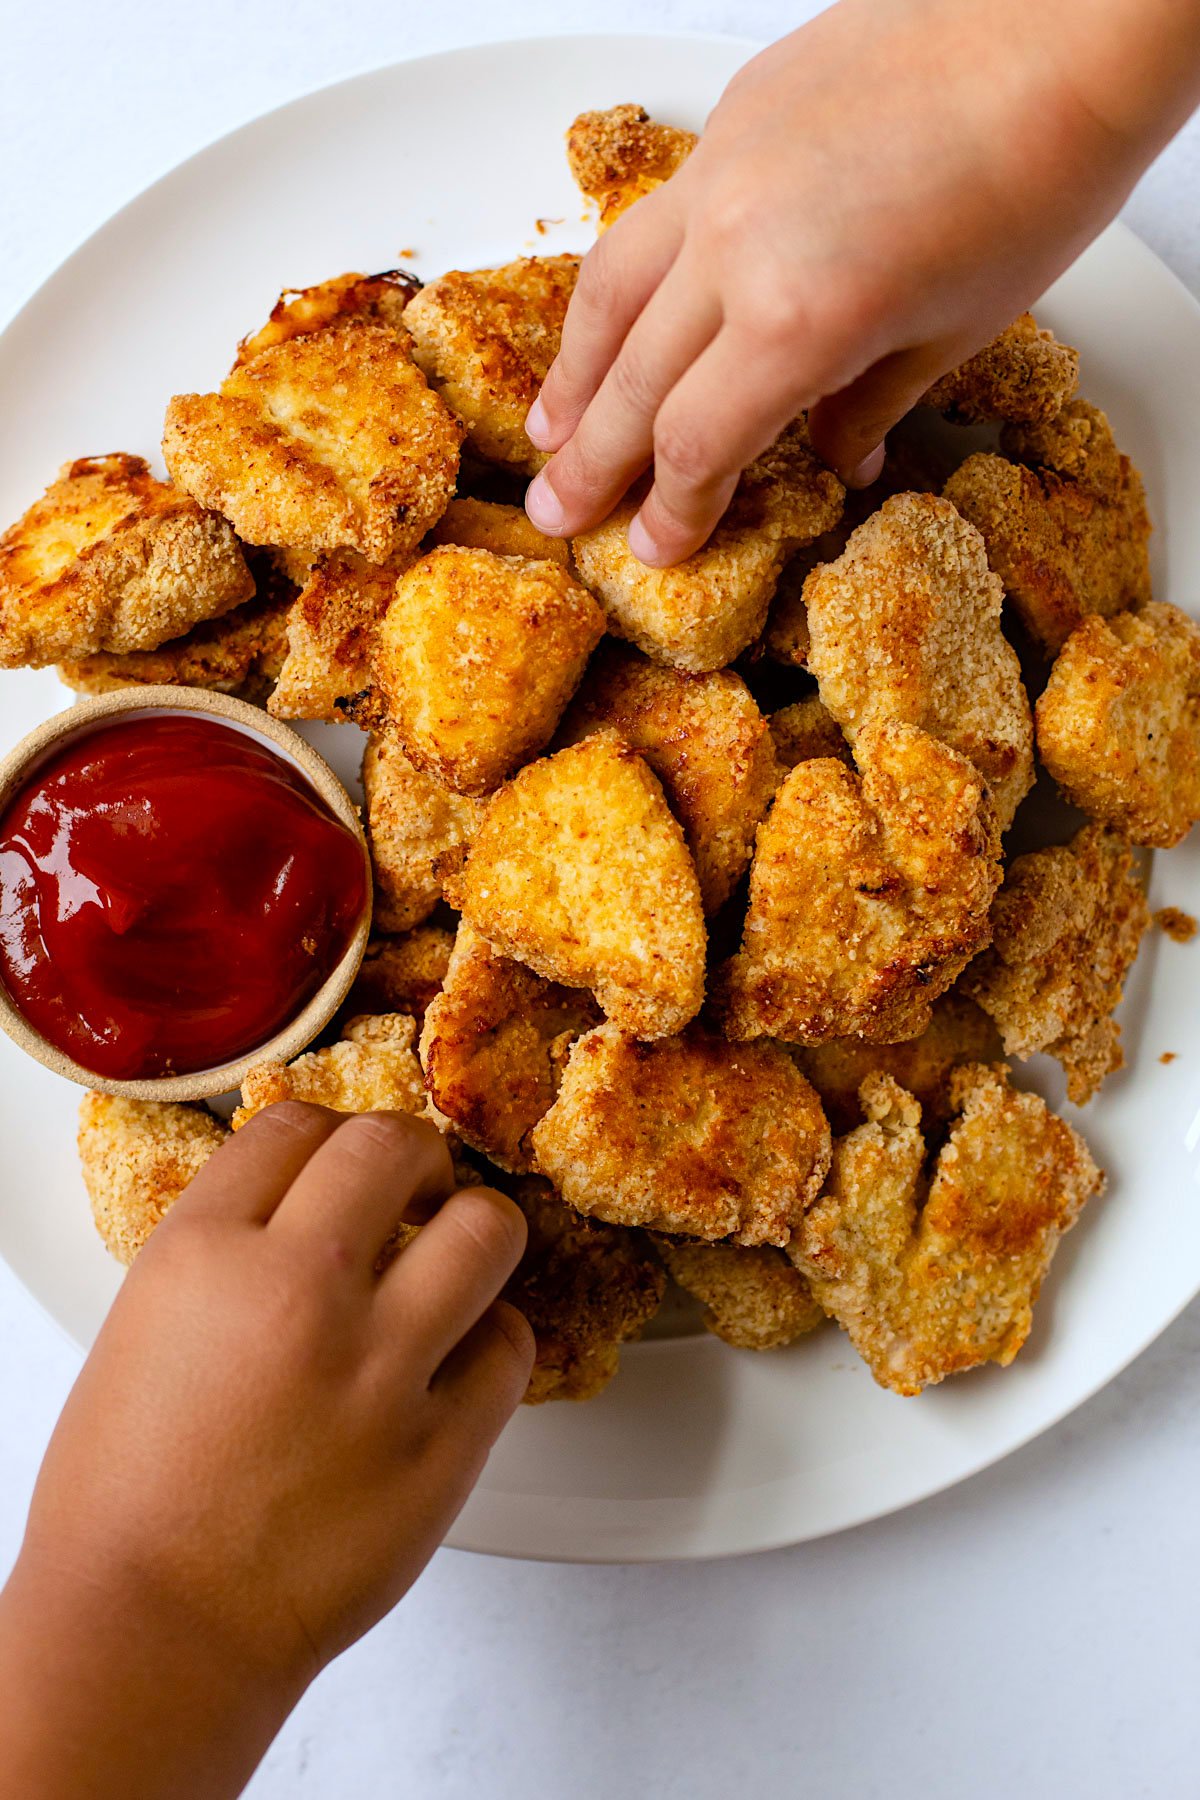 Kids hands grabbing gluten-free chicken nuggets.